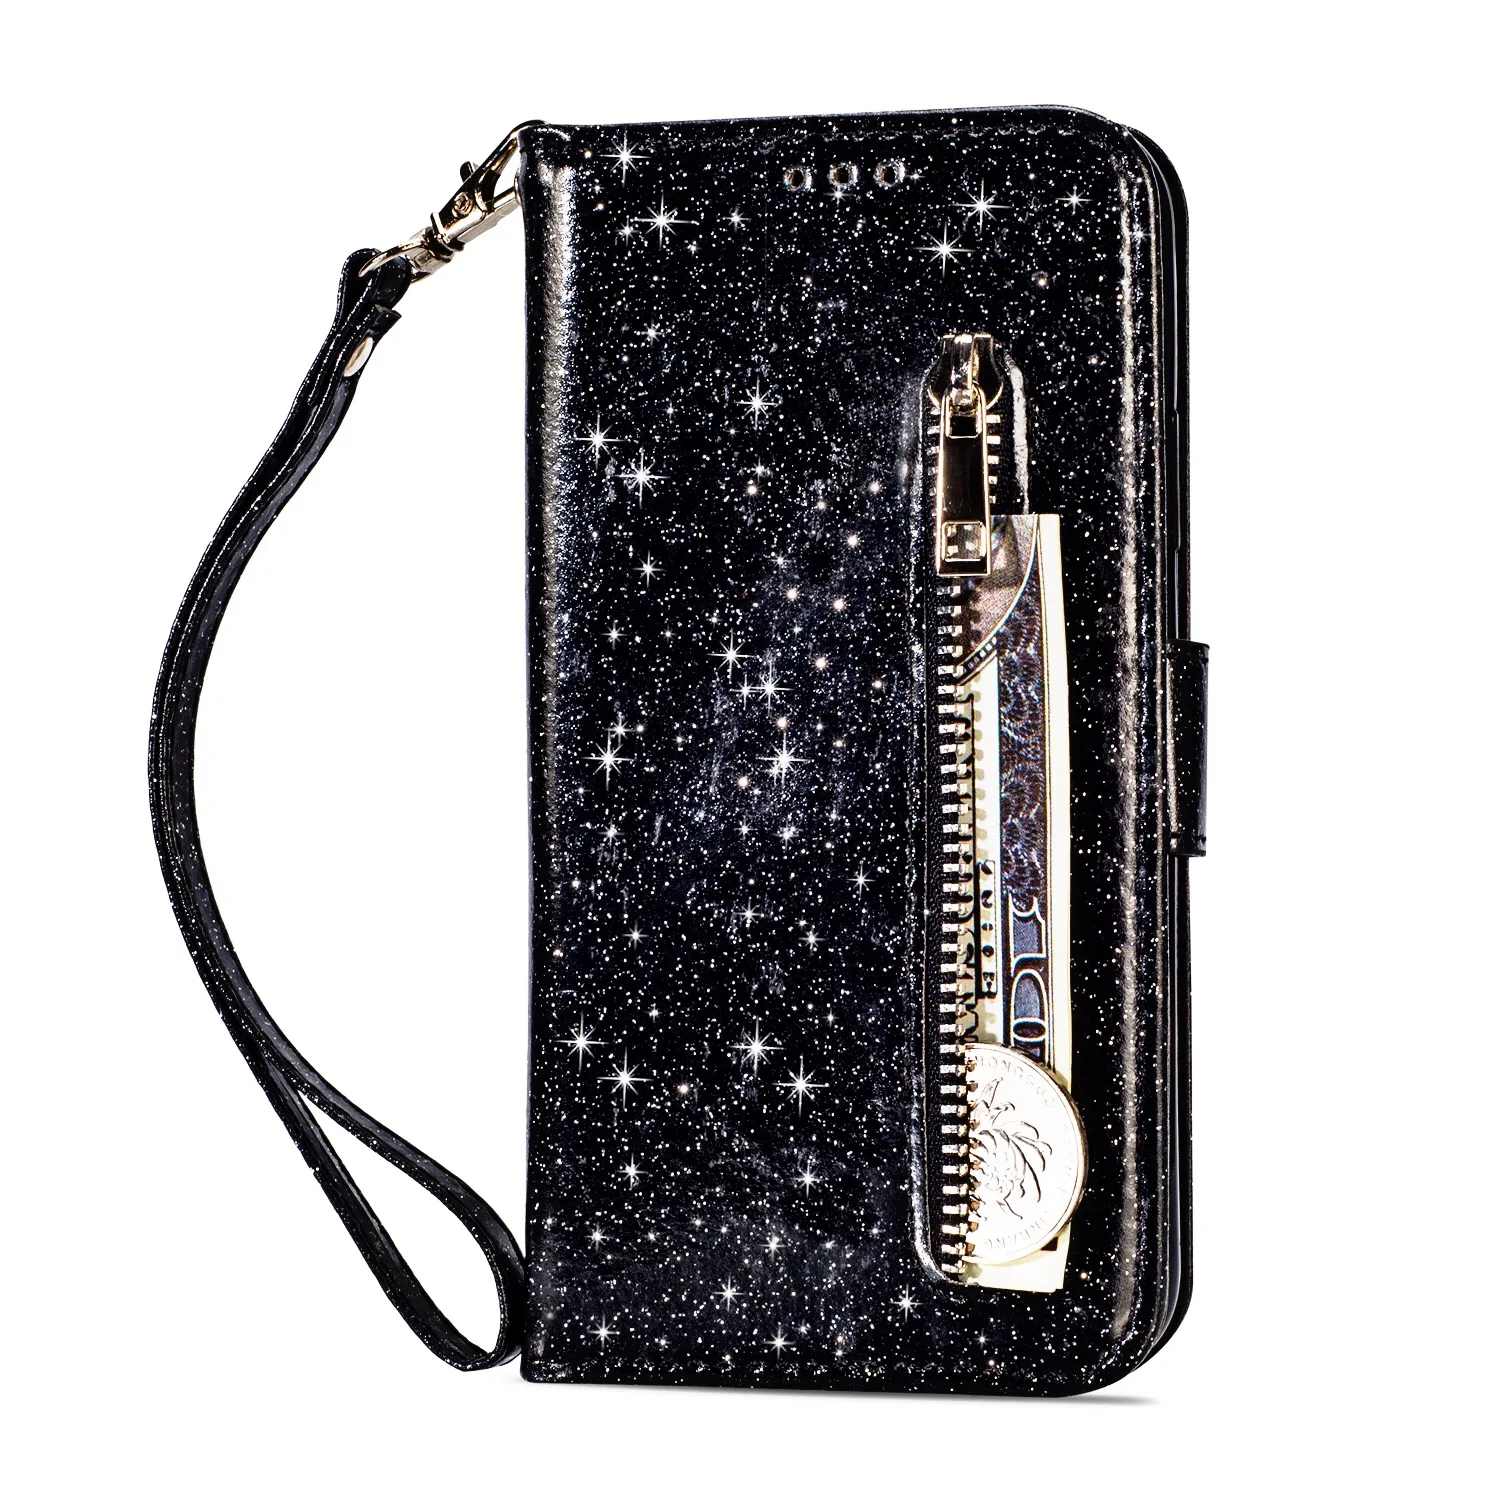 Роскошный чехол сверкающий с блестками для LG K10 кожаный бумажник чехол для телефона Флип Бумажник кожаный чехол для LG K8 K8 K10 - Цвет: Black